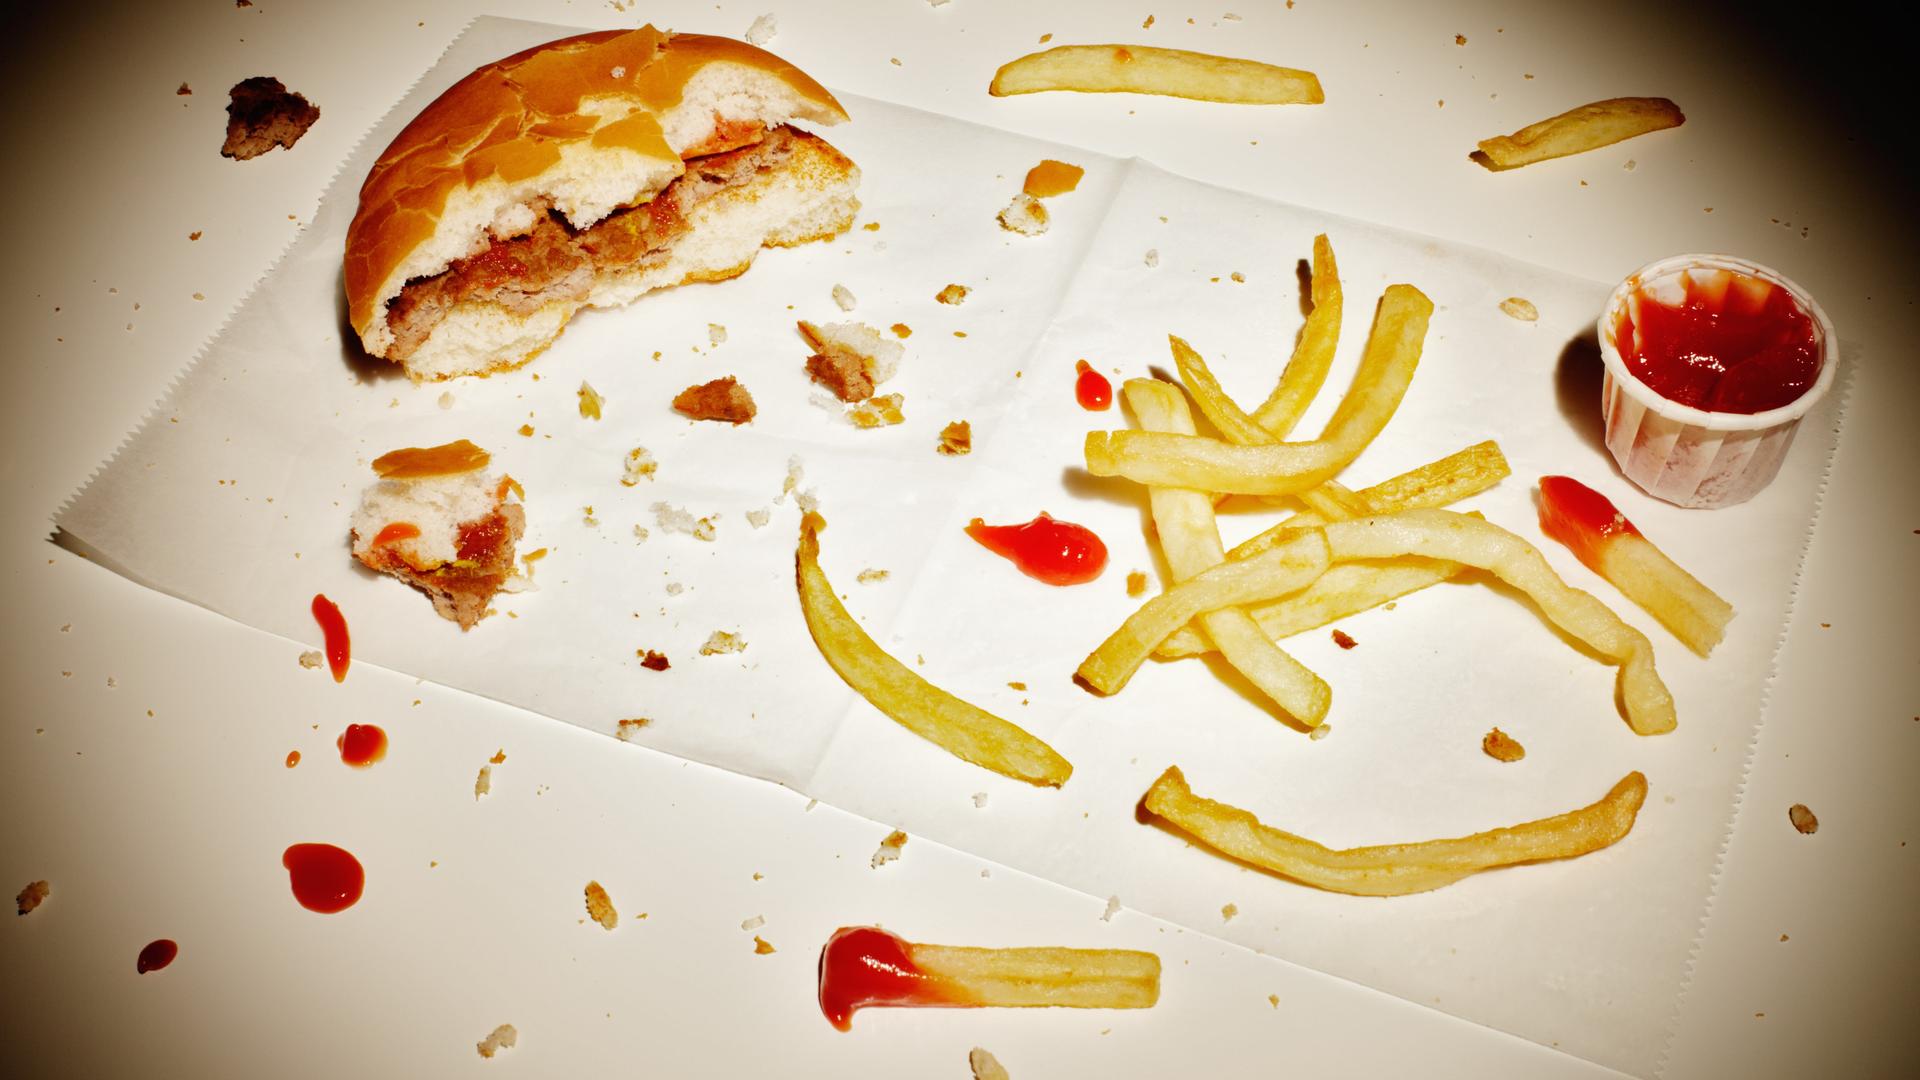 Ein angebissener Burger und Reste von Pommes liegen auf einem Tisch.